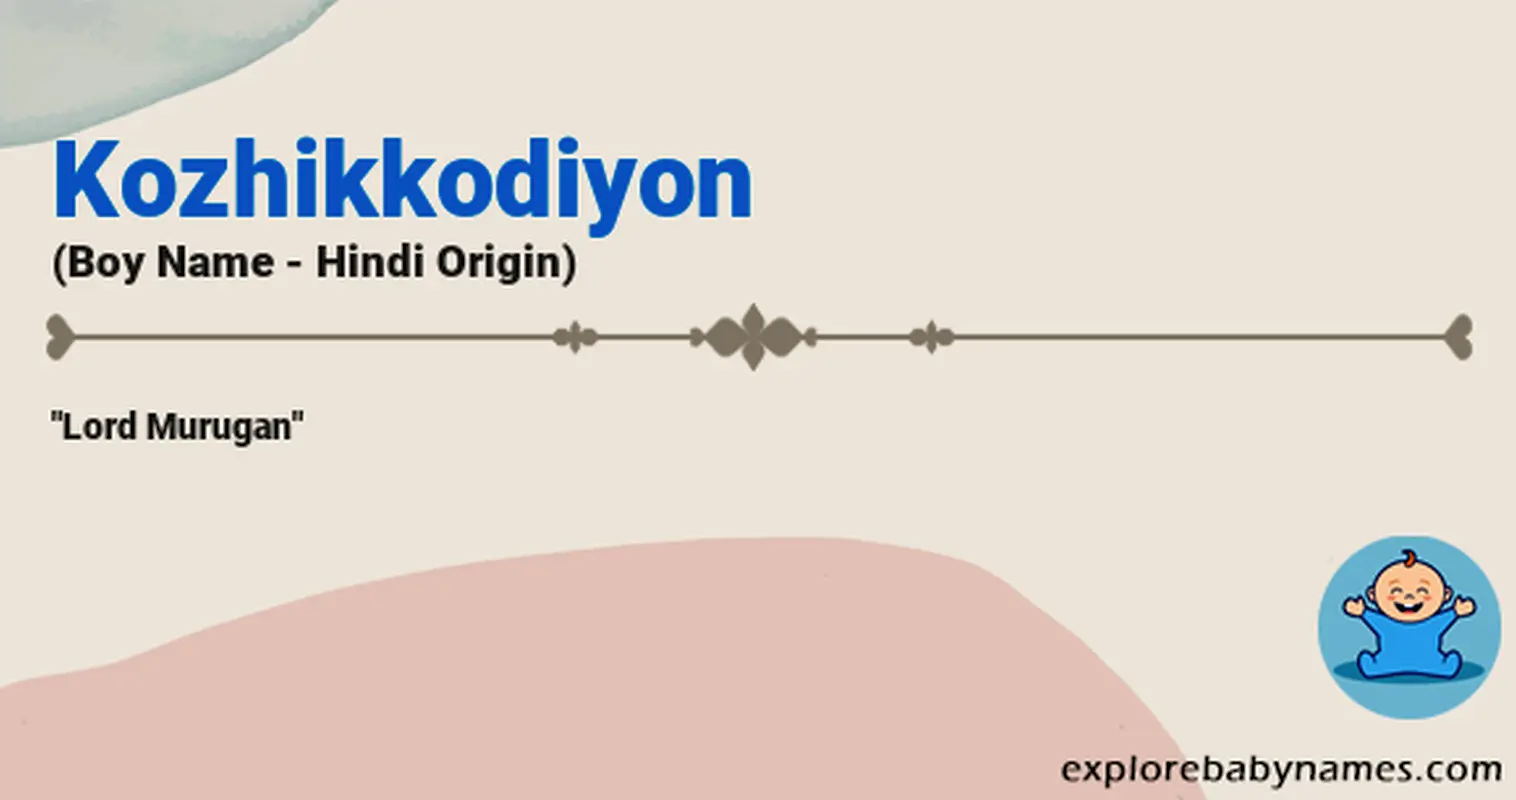 Meaning of Kozhikkodiyon